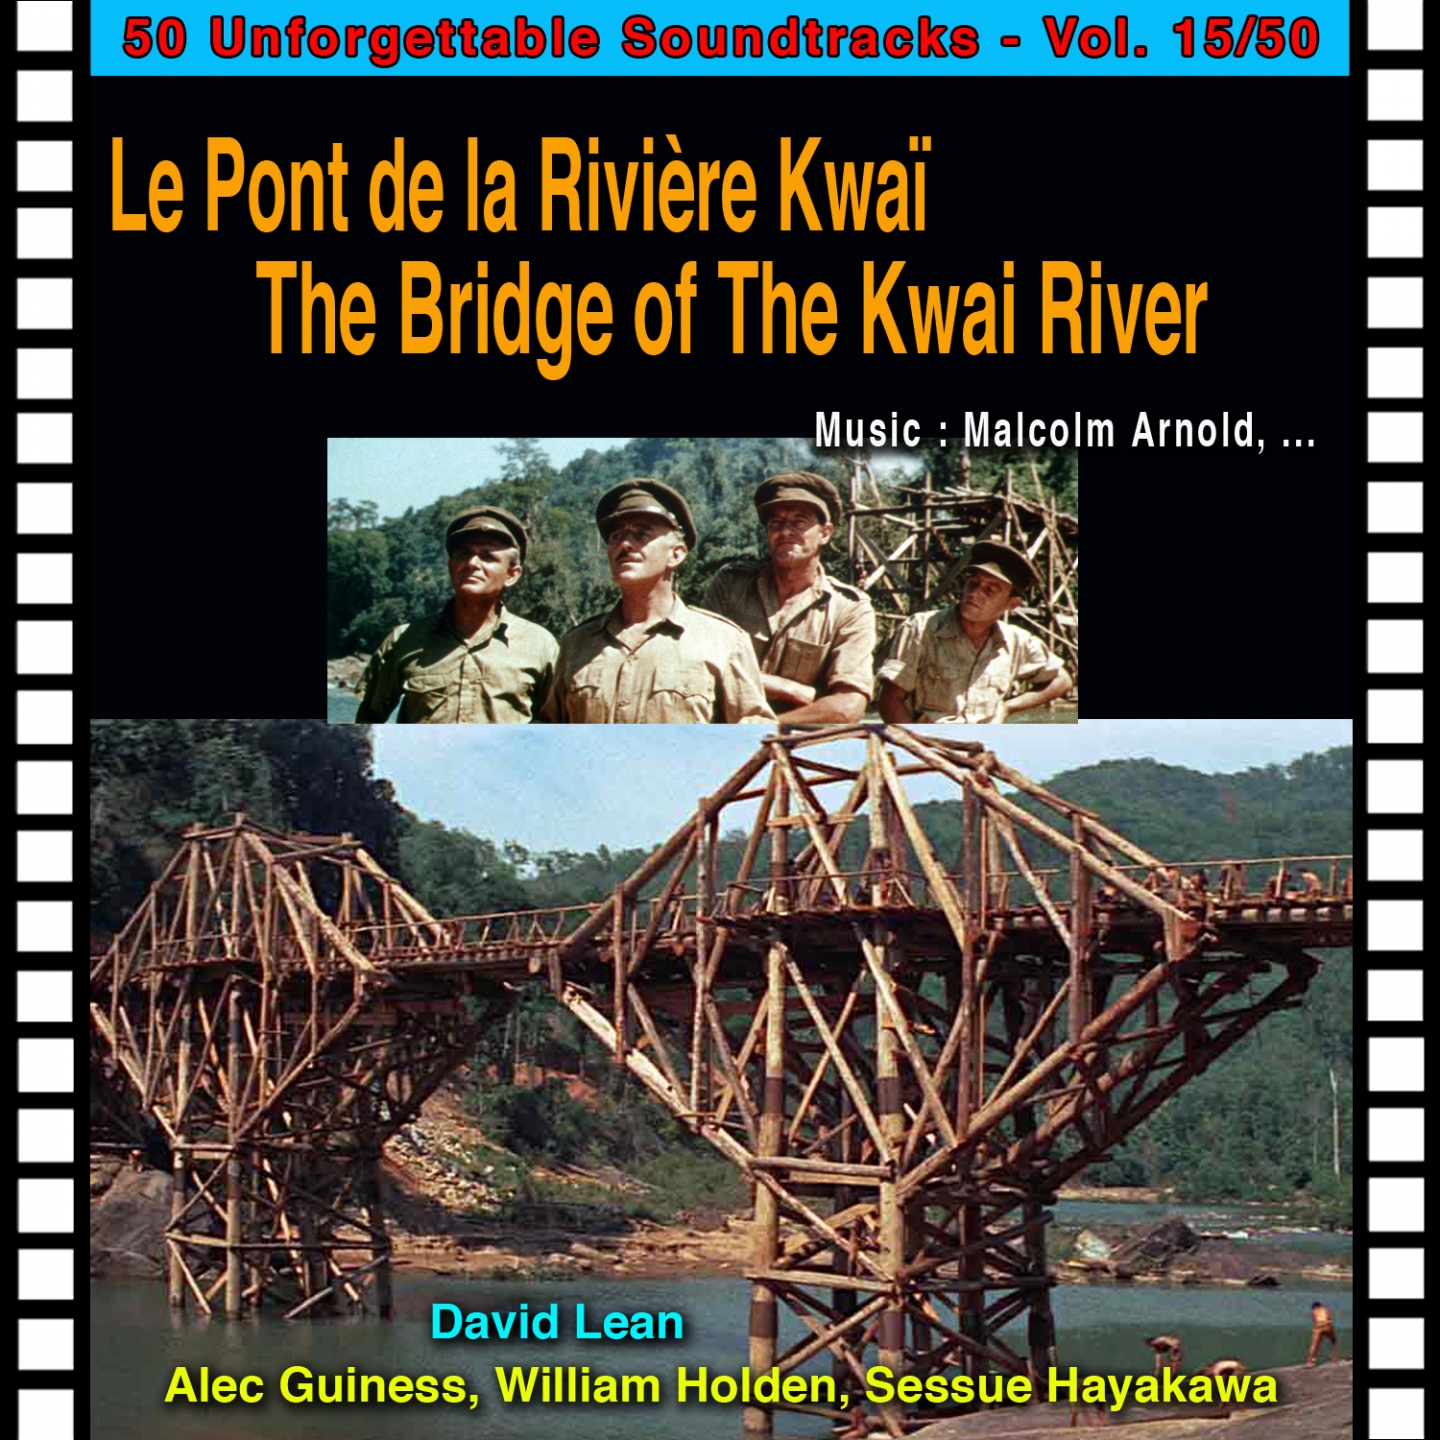 Camp Concert Dance Le Pont De La Rivie re Kwai  The Bridge of the Kwai River